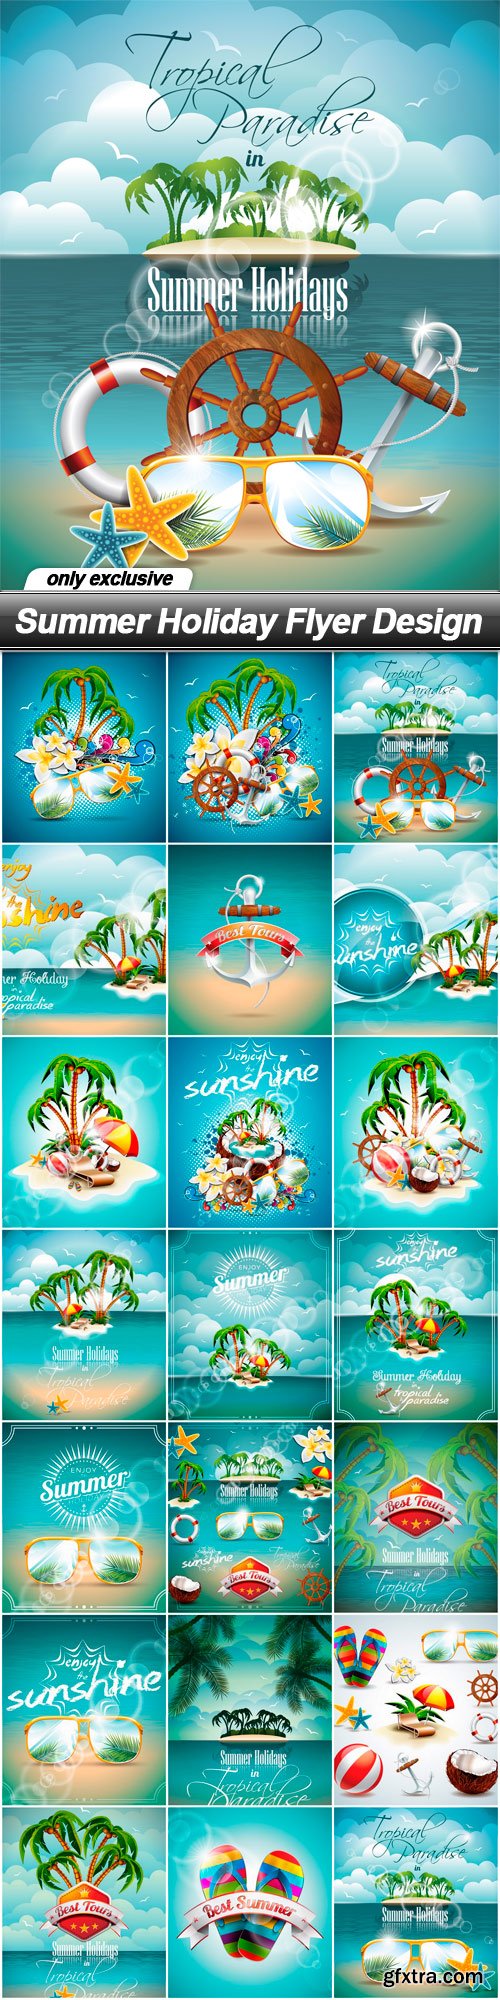 Summer Holiday Flyer Design - 21 EPS